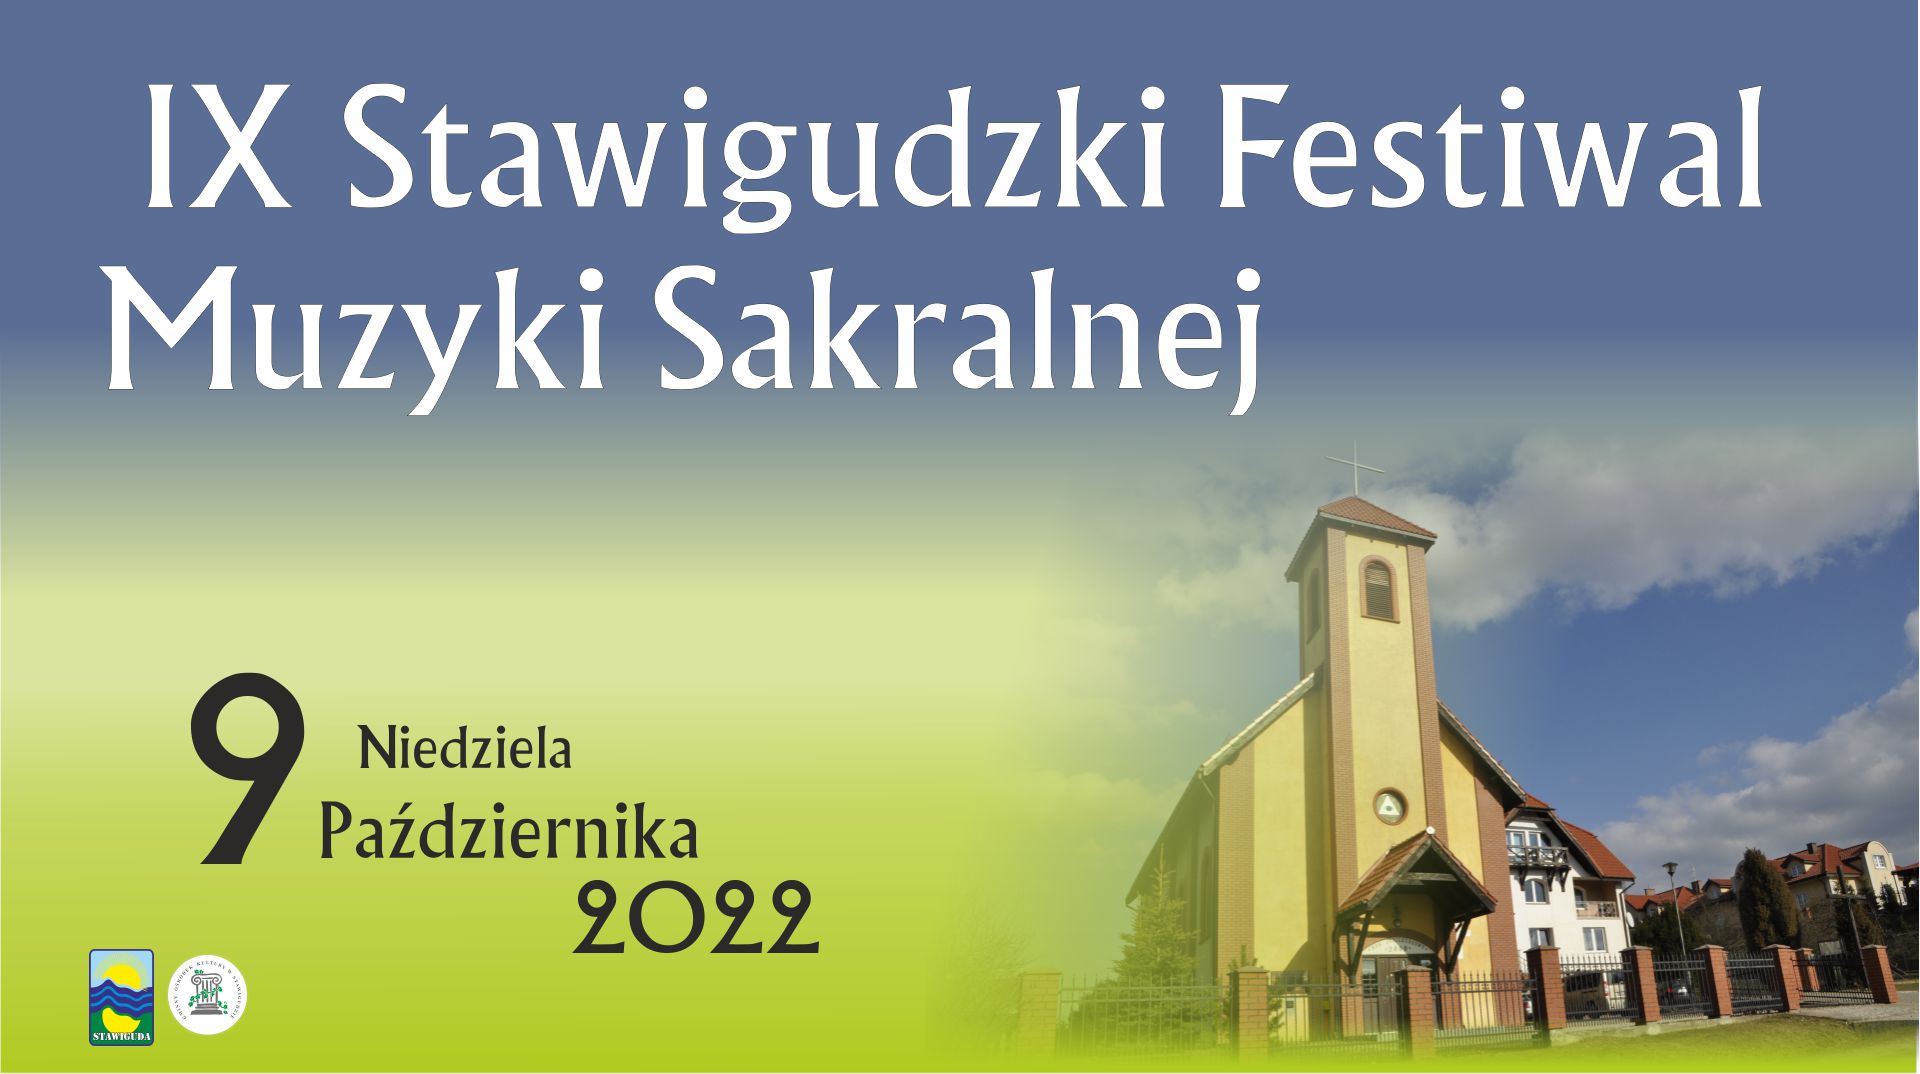 Stawigudzki Festiwal Muzyki Sakralnej